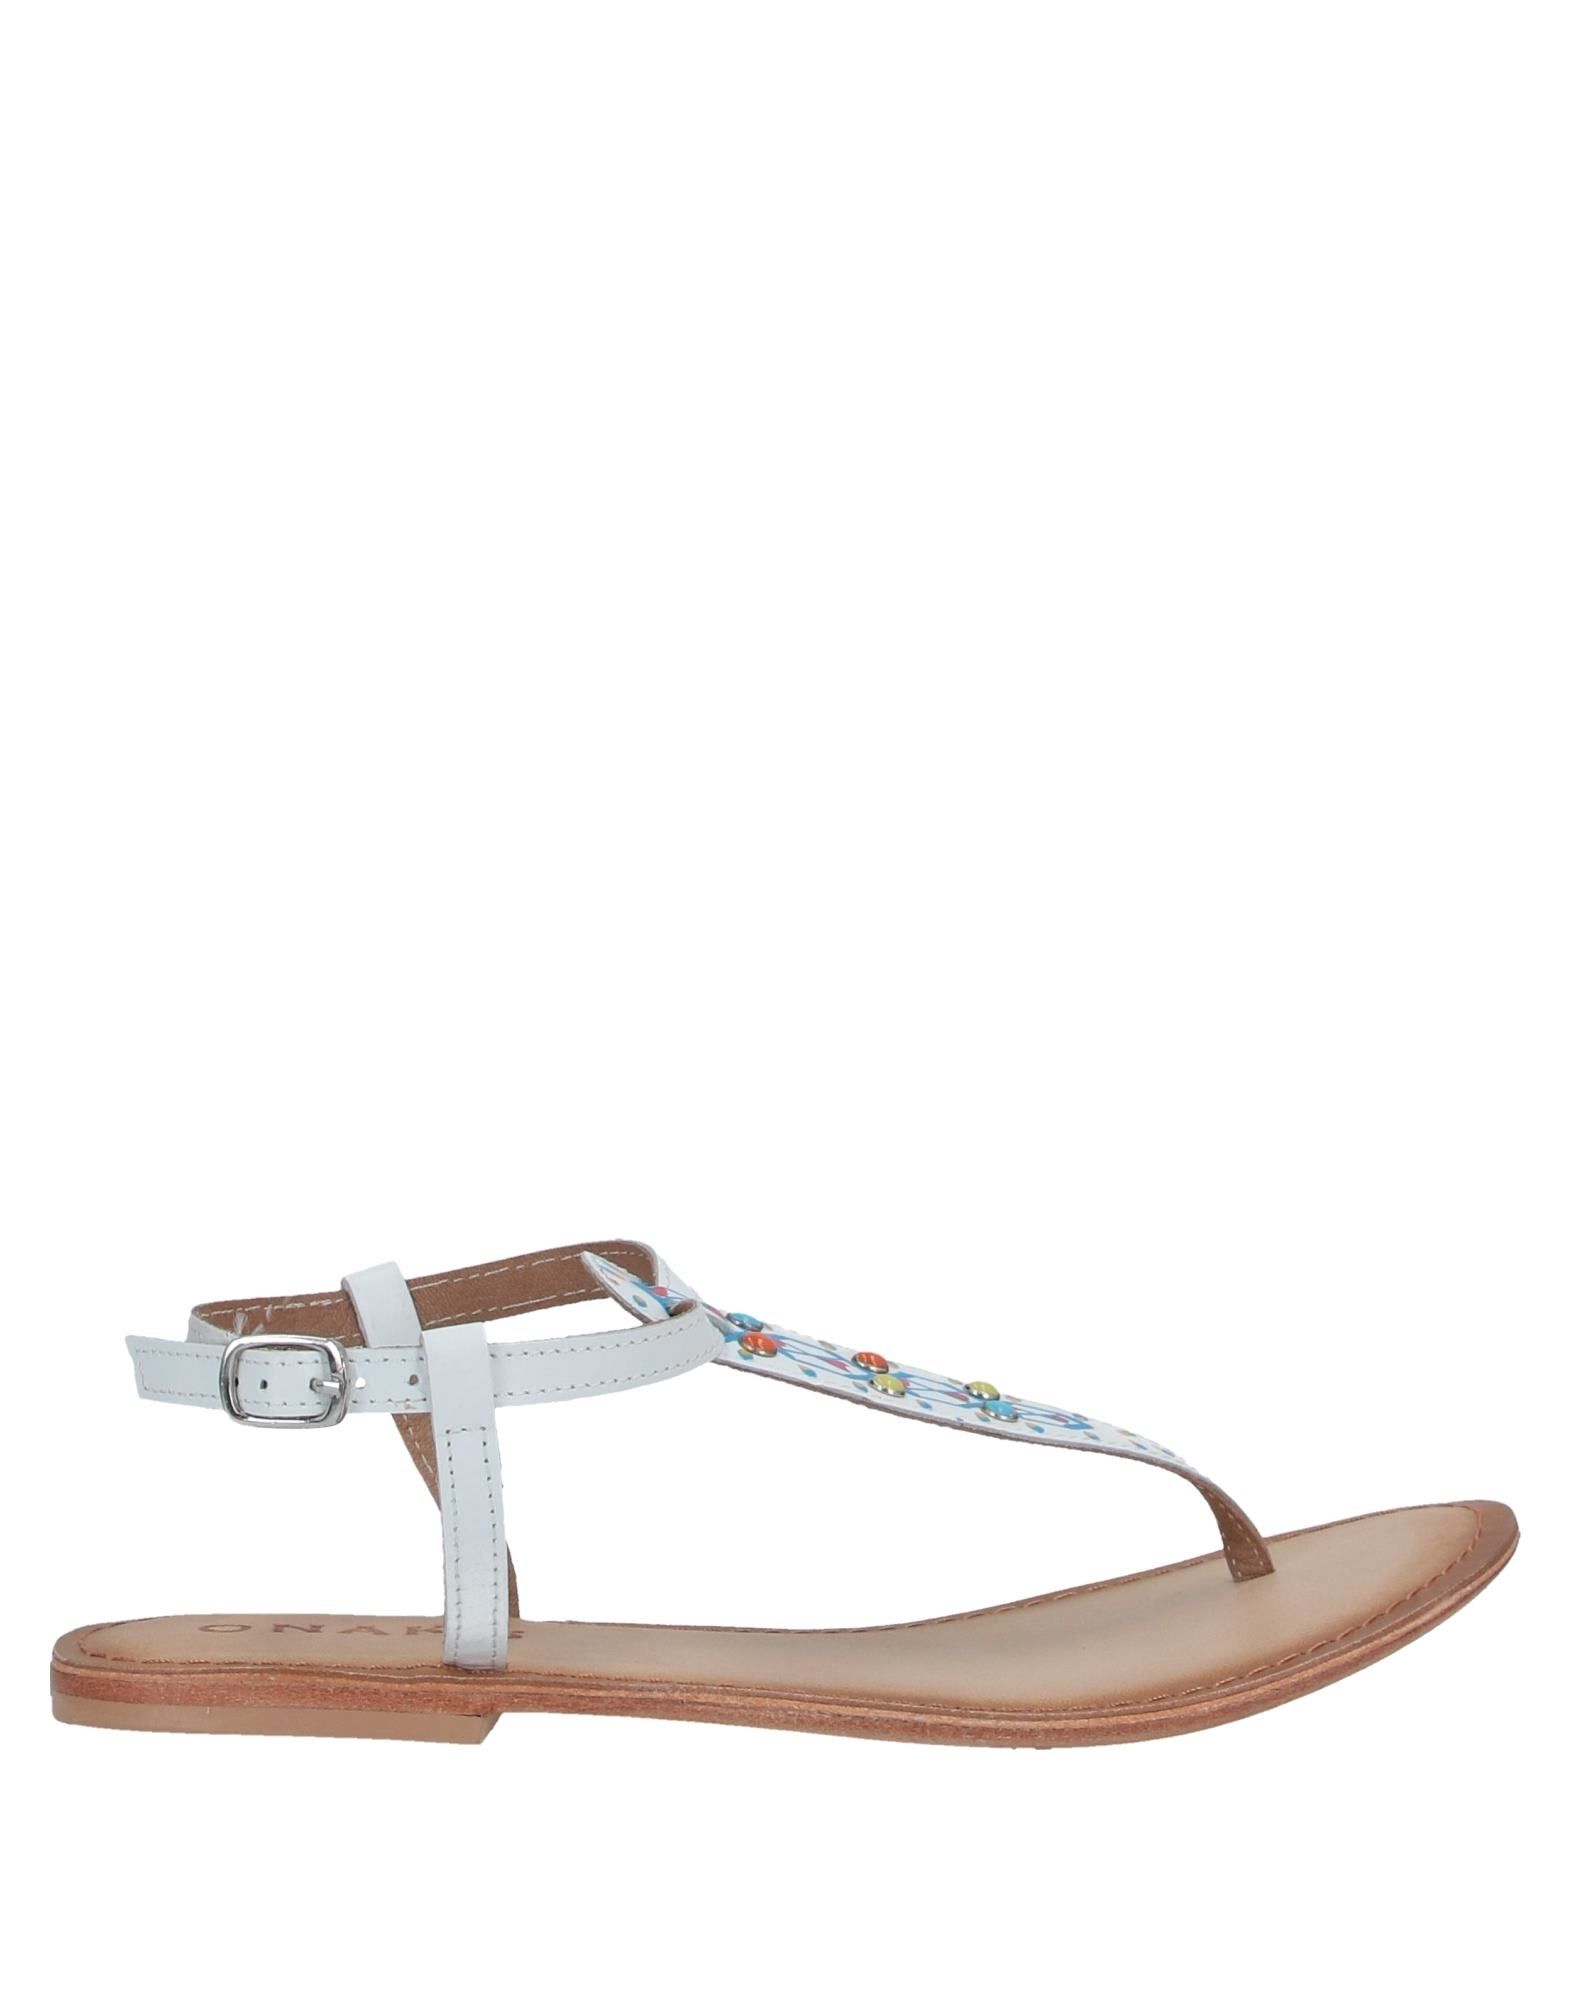 ONAKO'ONAKO' Toe strap sandals | DailyMail